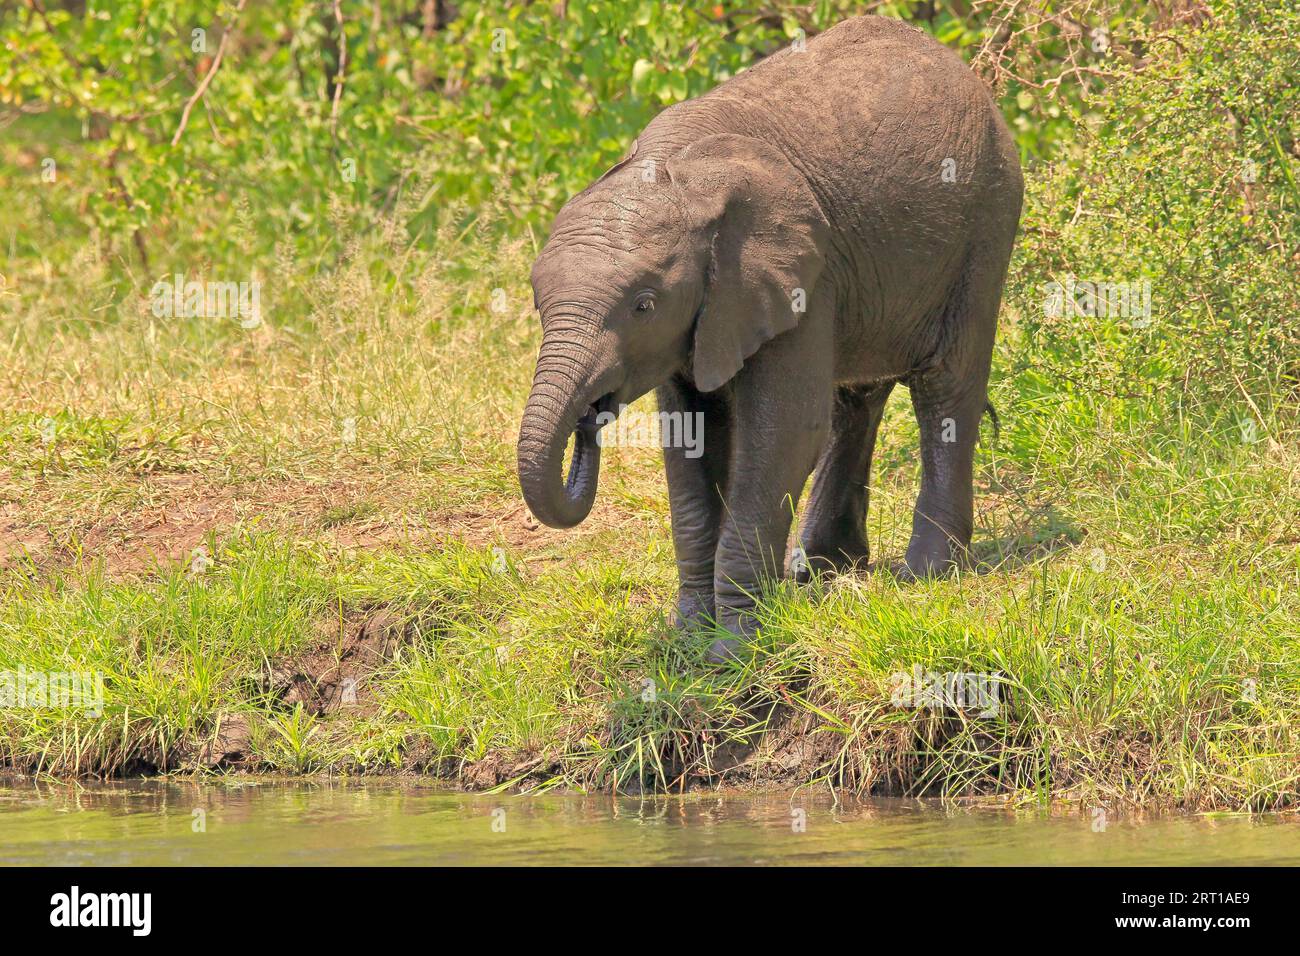 Elefante africano (Loxodonta africana), animal joven, bebiendo en el agua, Parque Nacional Kruger, Sudáfrica Foto de stock